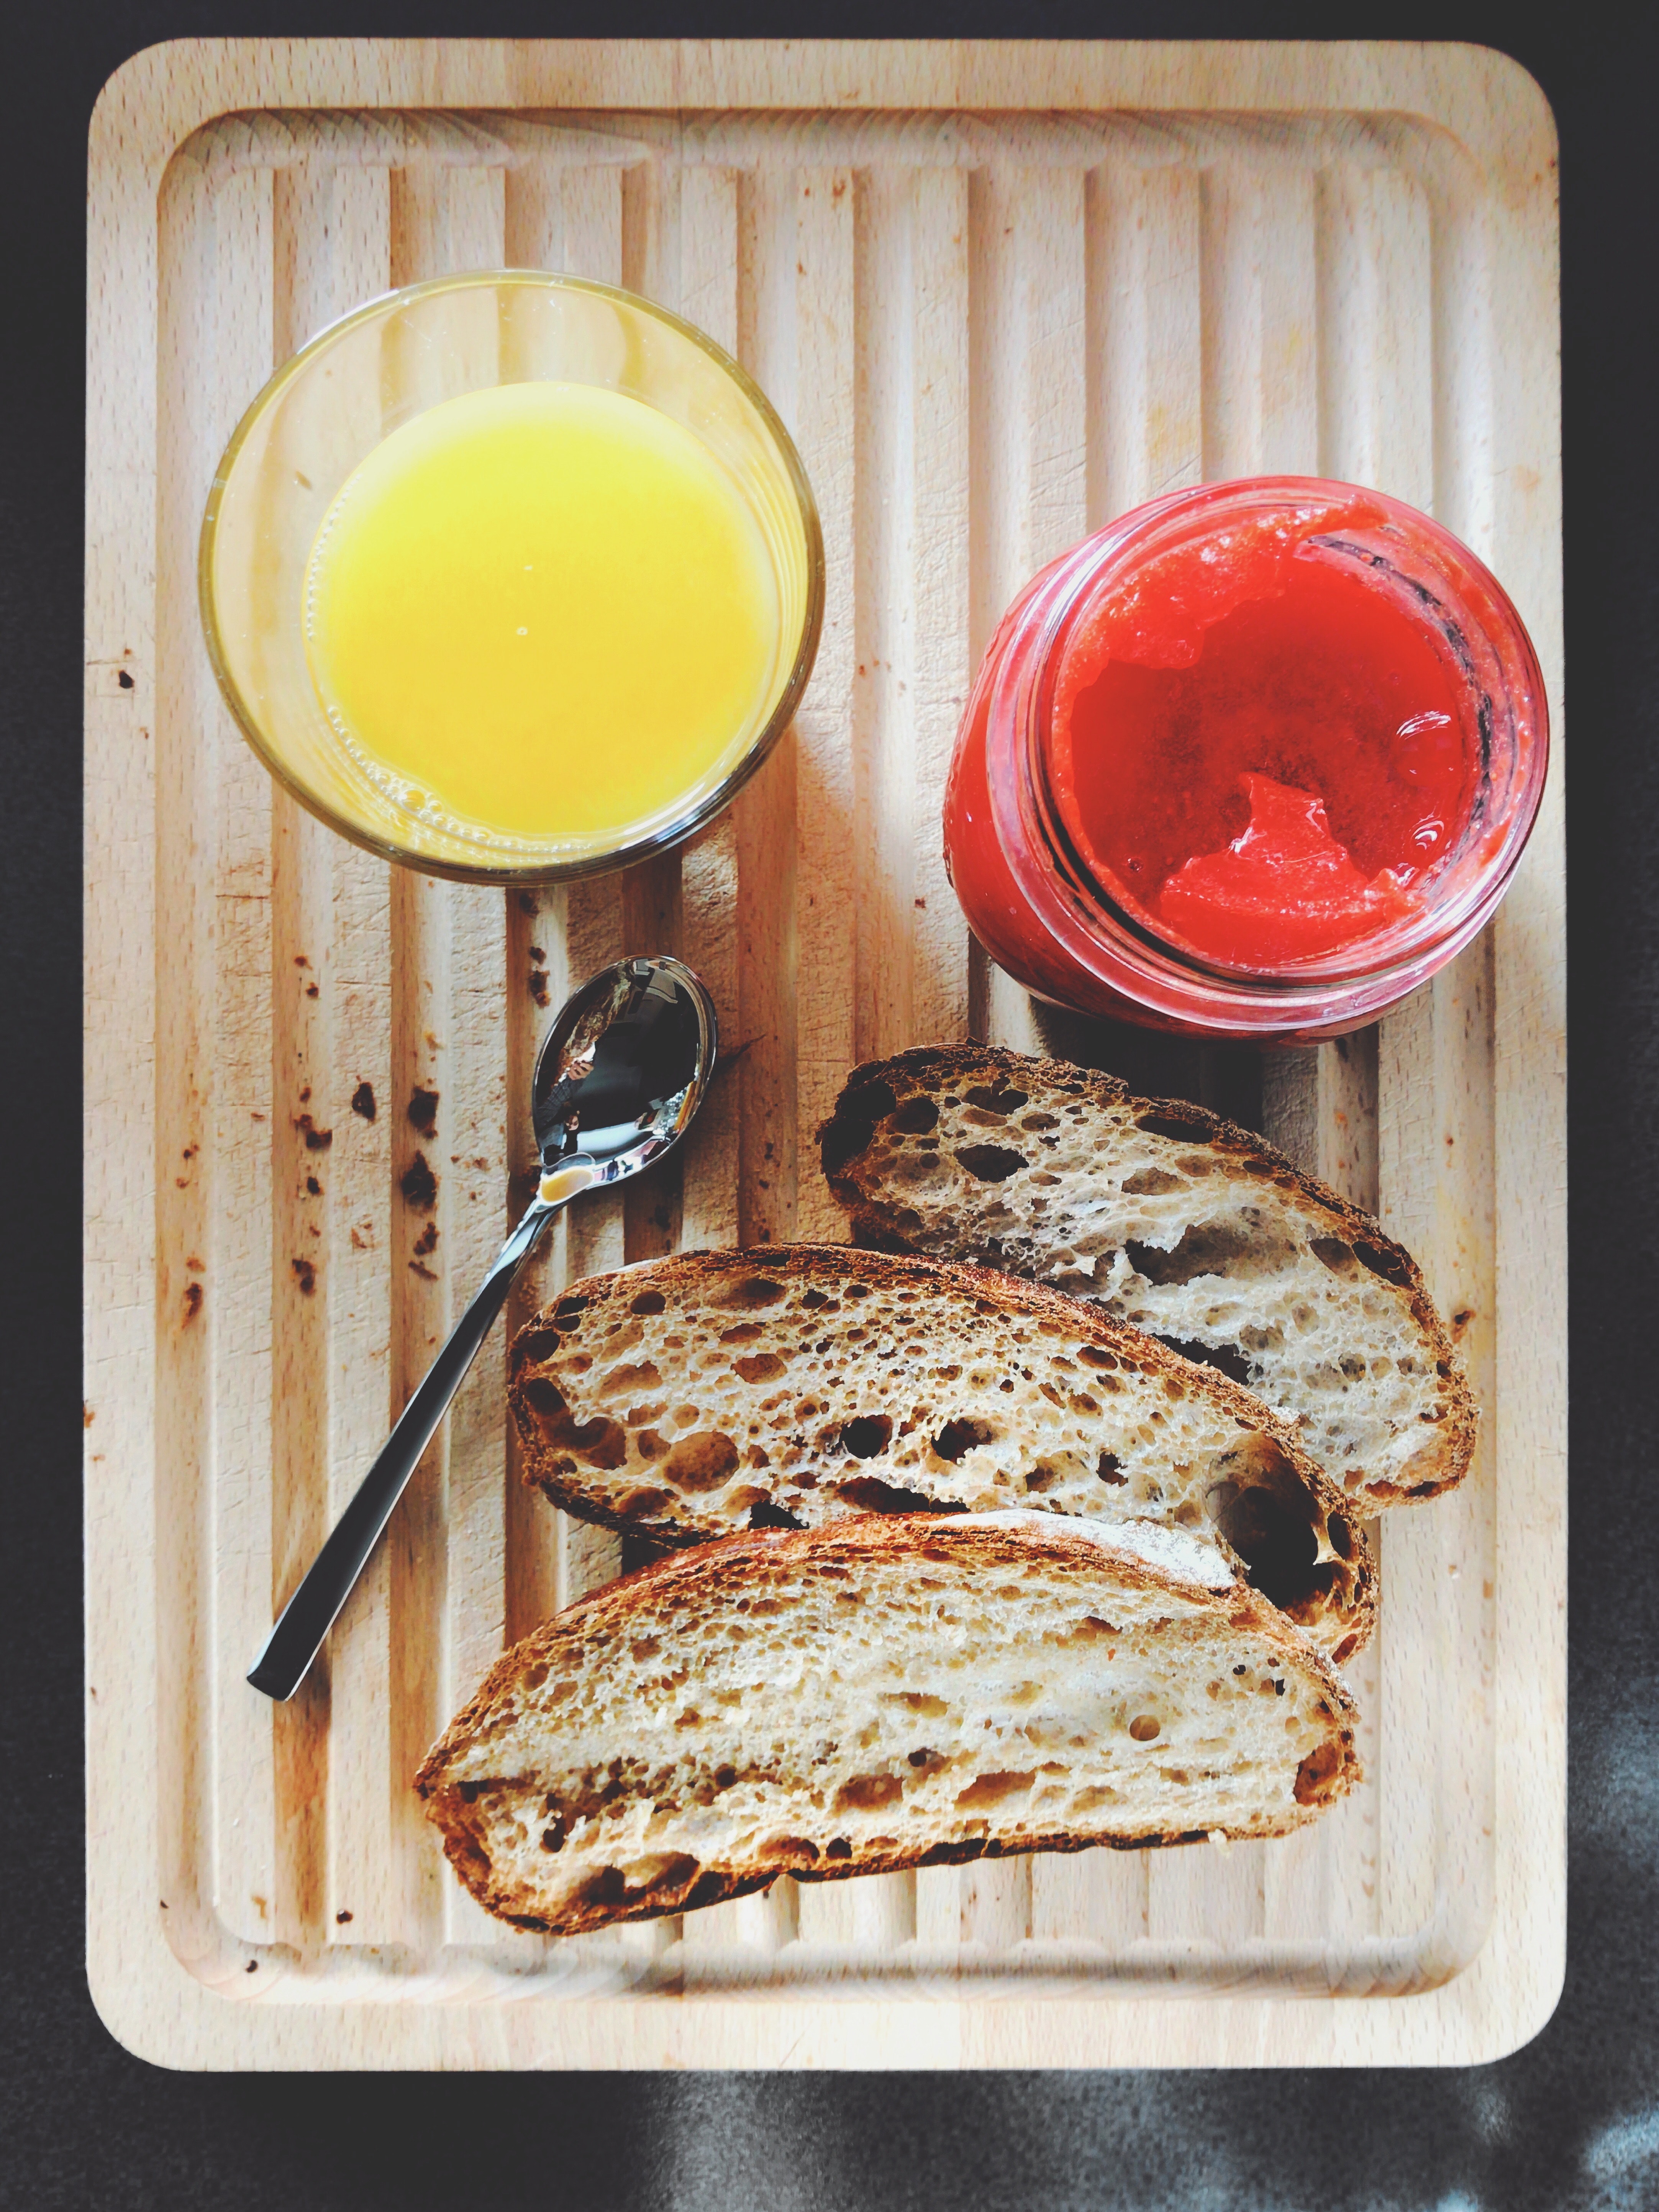 Orange juice, jam and bread photo